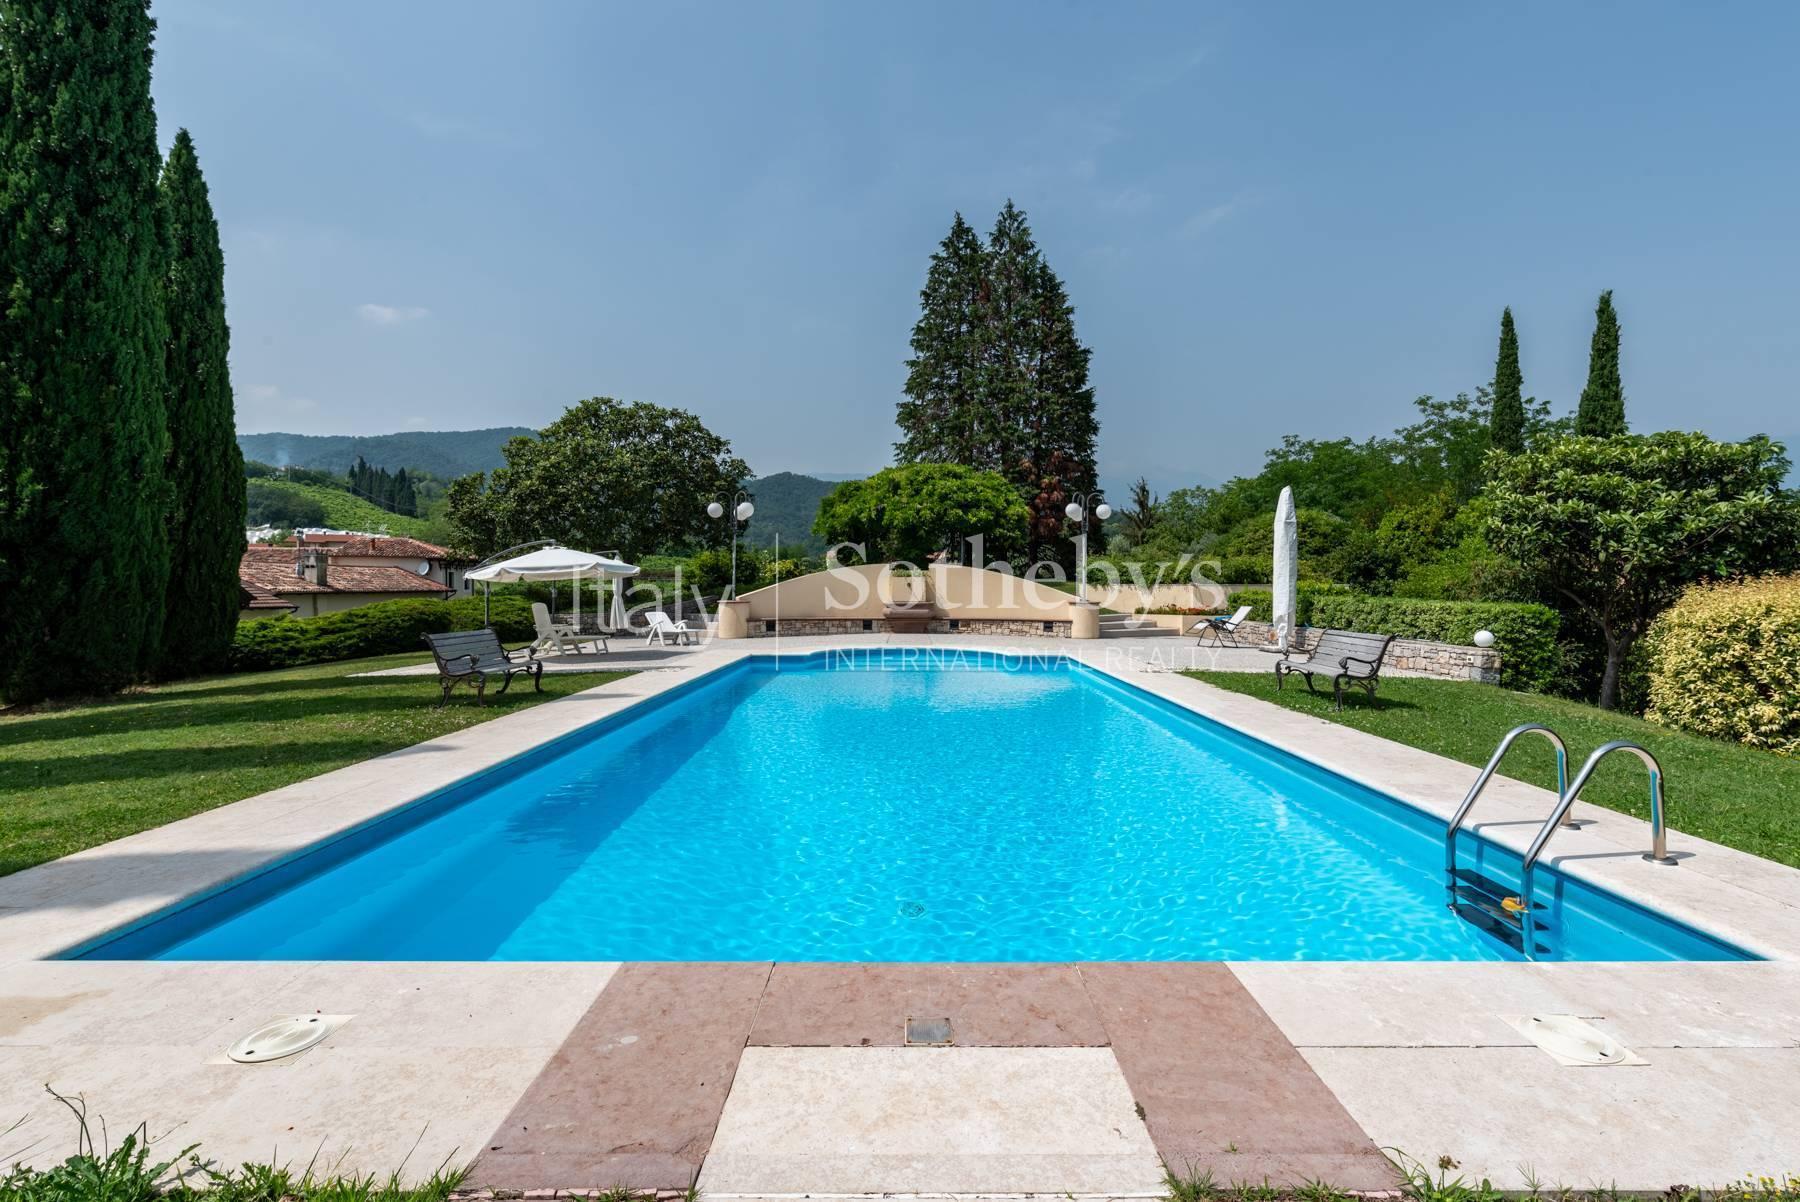 Signorile villa storica con parco collinare e piscina - 6